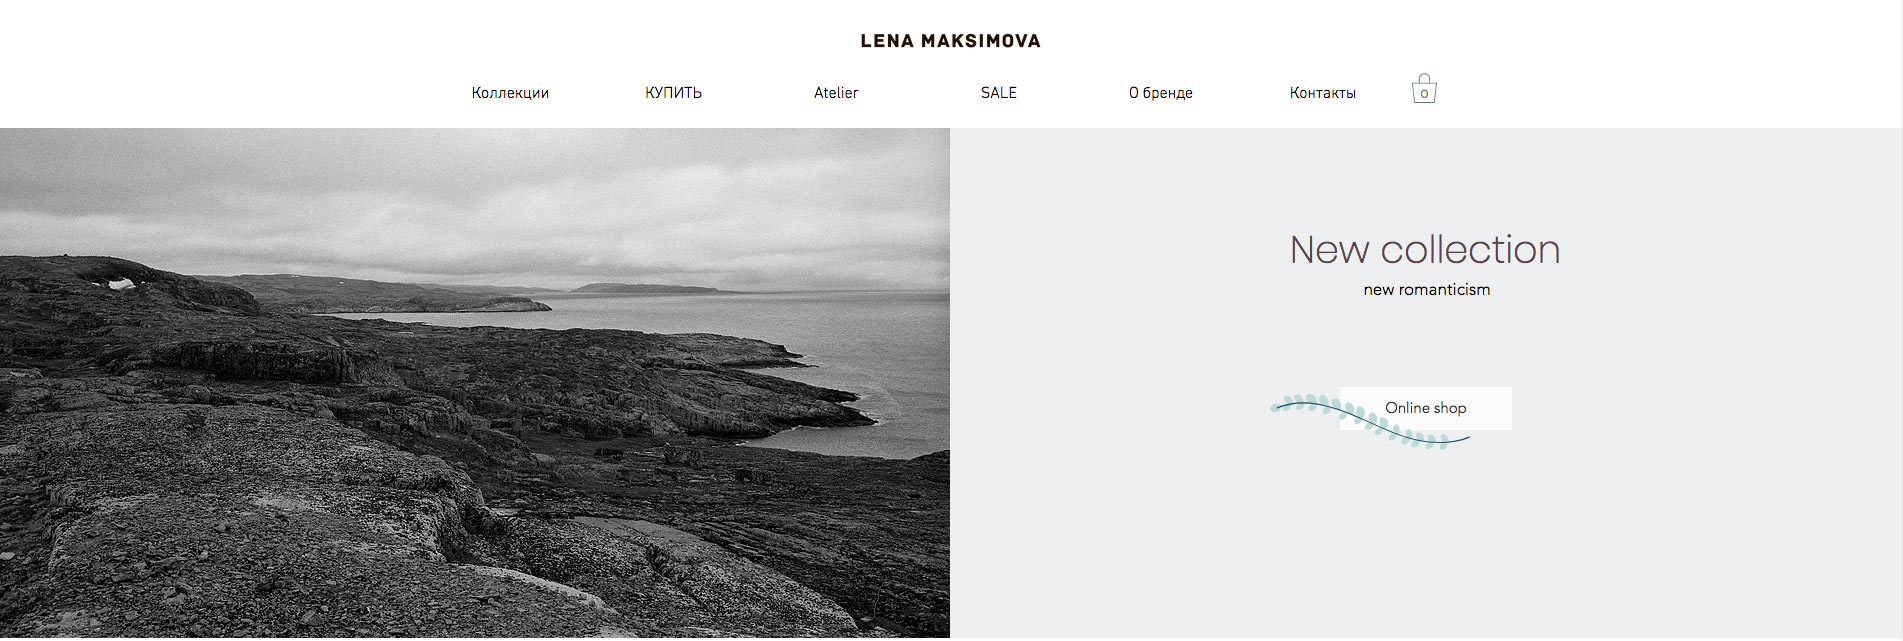 Новое имя: Muus Lena Maksimova (фото 5)